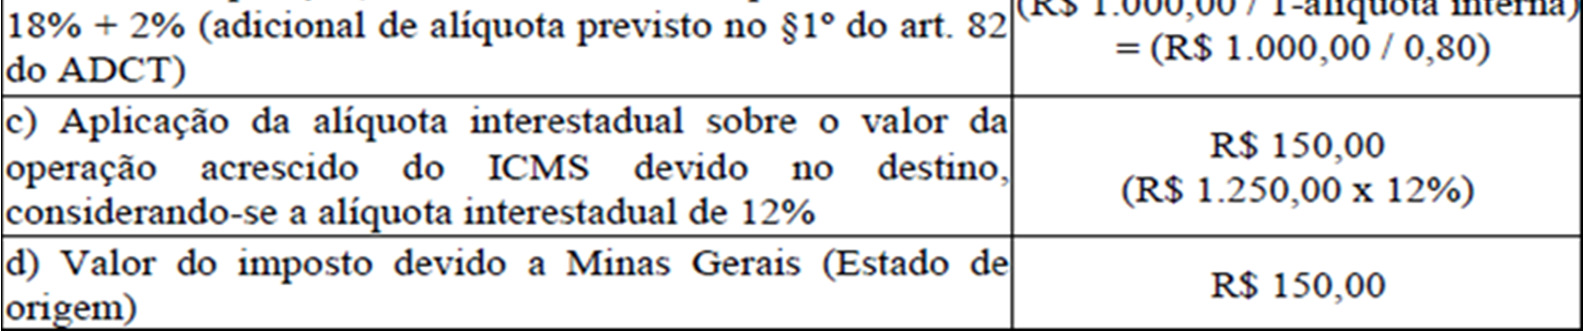 1.3.3. Operações e prestações interestaduais promovidas por contribuintes estabelecidos em Minas Gerais destinadas a consumidores finais, não contribuintes do ICMS 1.3.4.